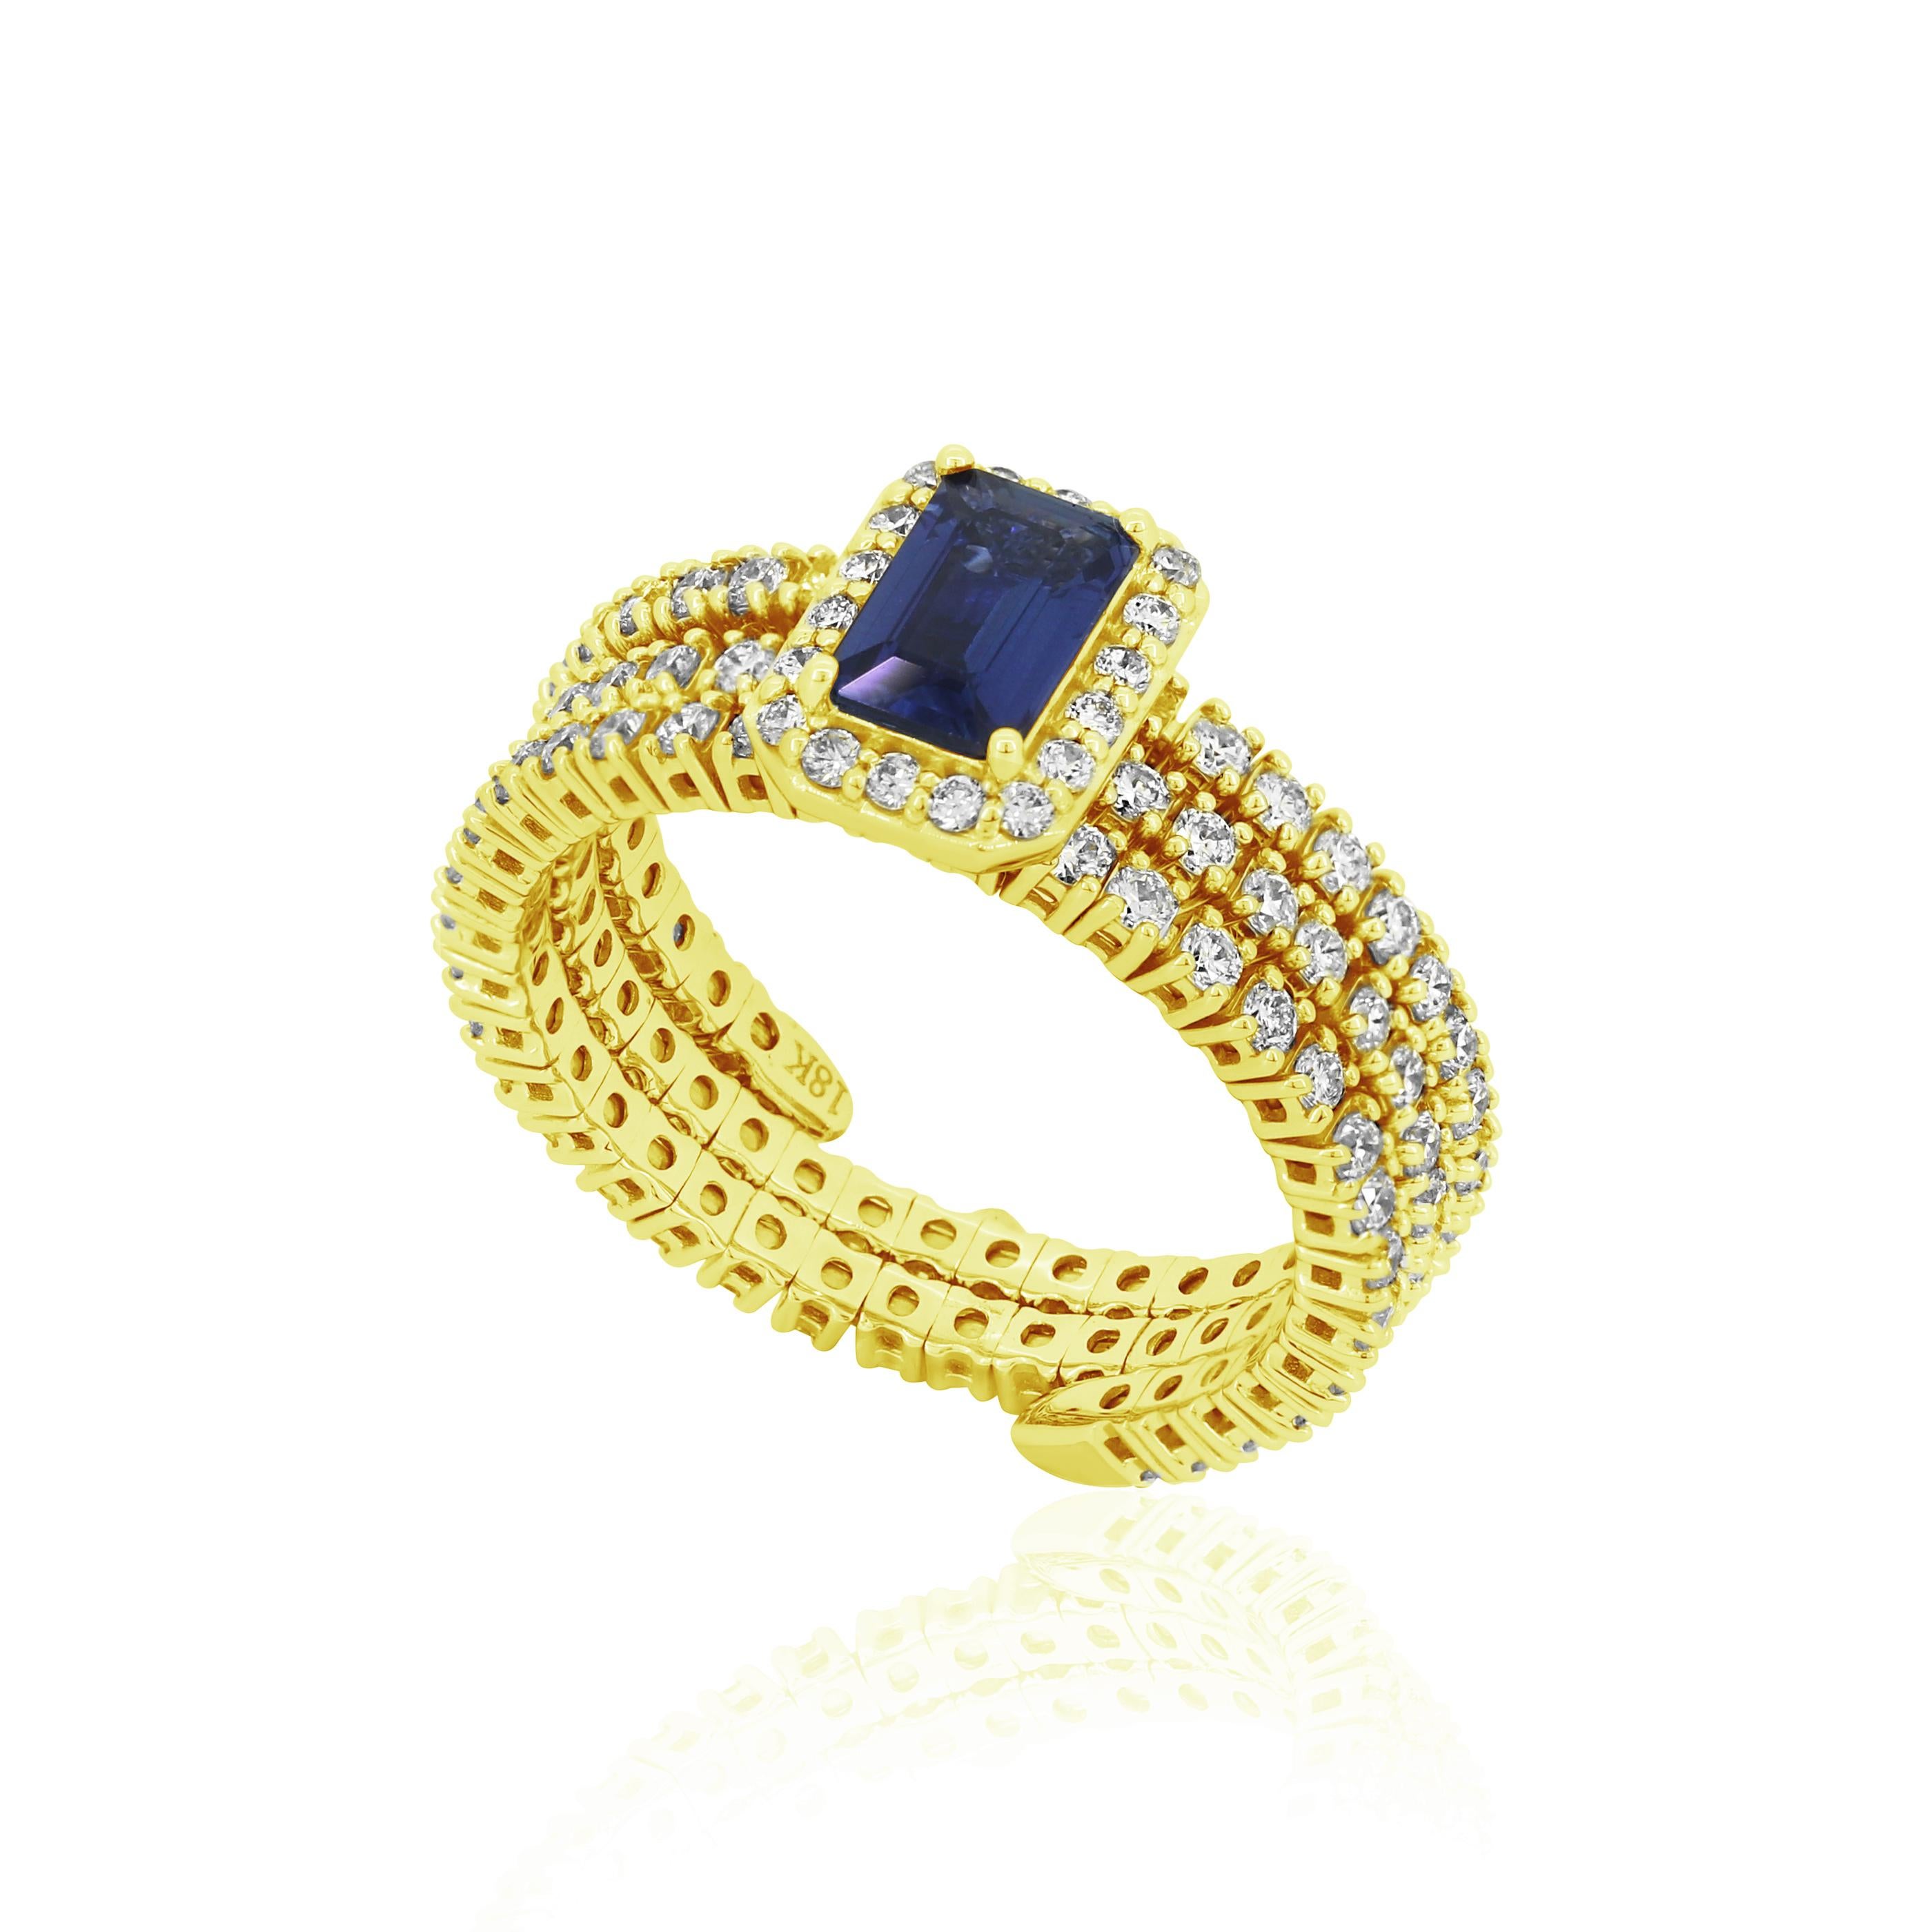 Dieser verstellbare Ring von Gemistry mit blauem Saphir aus 18 Karat Gelbgold und Diamanten besticht durch seine verführerischen Farbtöne und sein Funkeln. Der prächtige blaue Saphir mit achteckigem Schliff ist in der Mitte des Rings gefasst und